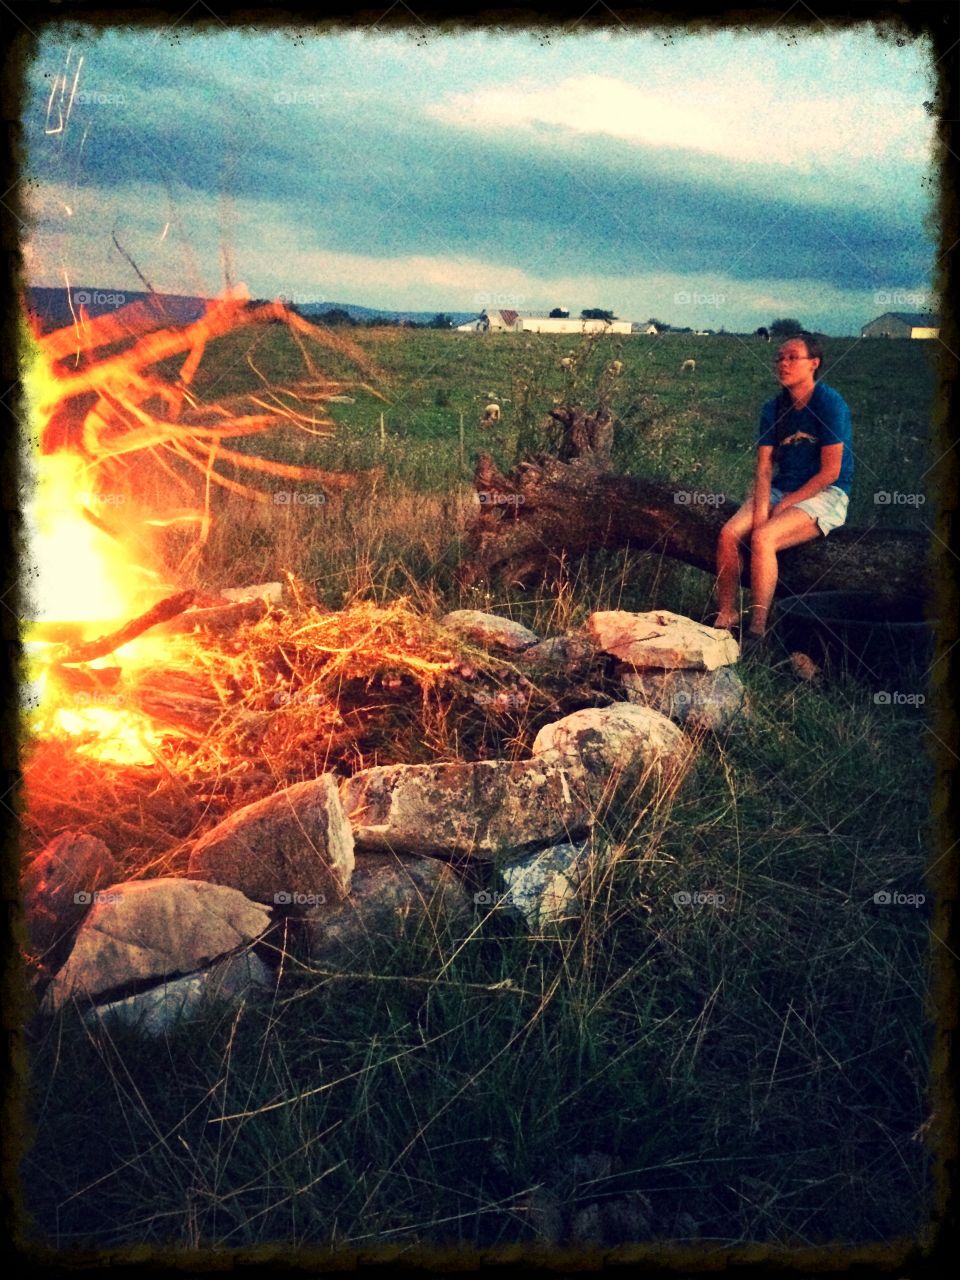 Summer night bonfire 